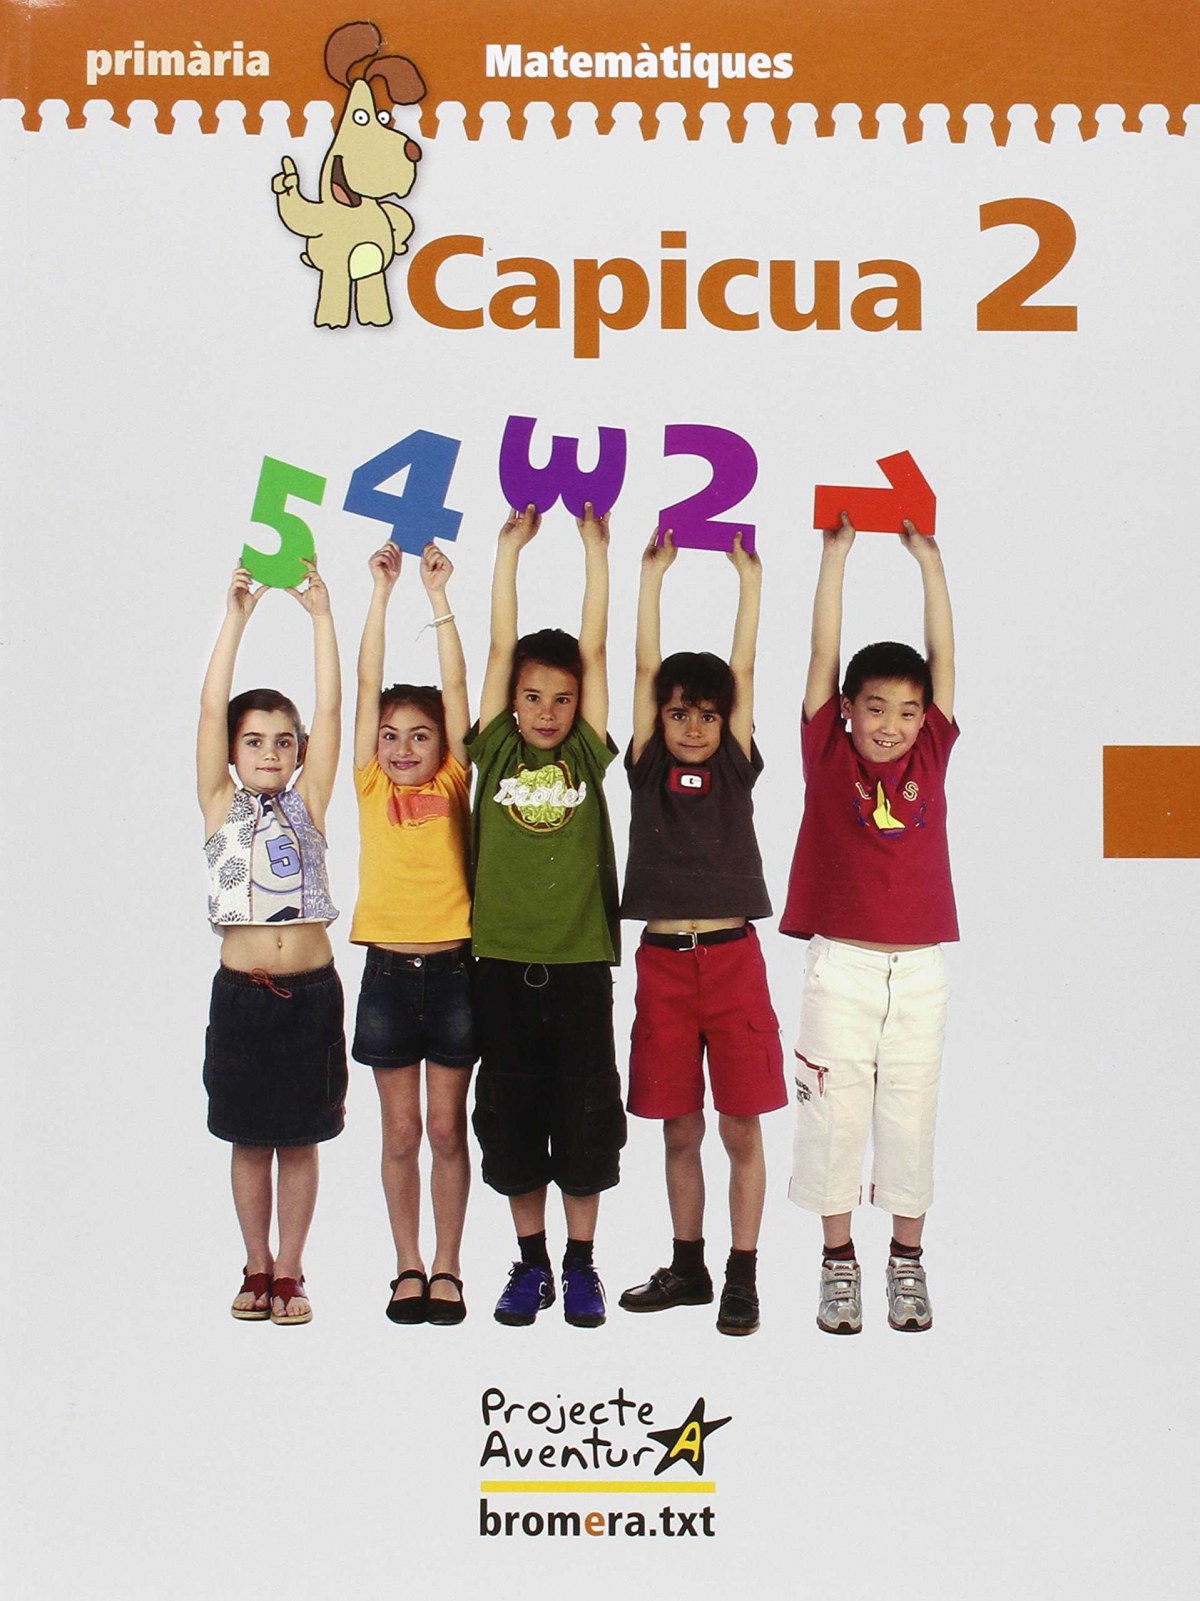 Capicua   2 matematiques (val/07) - primaria capicua 2 matematiques (v